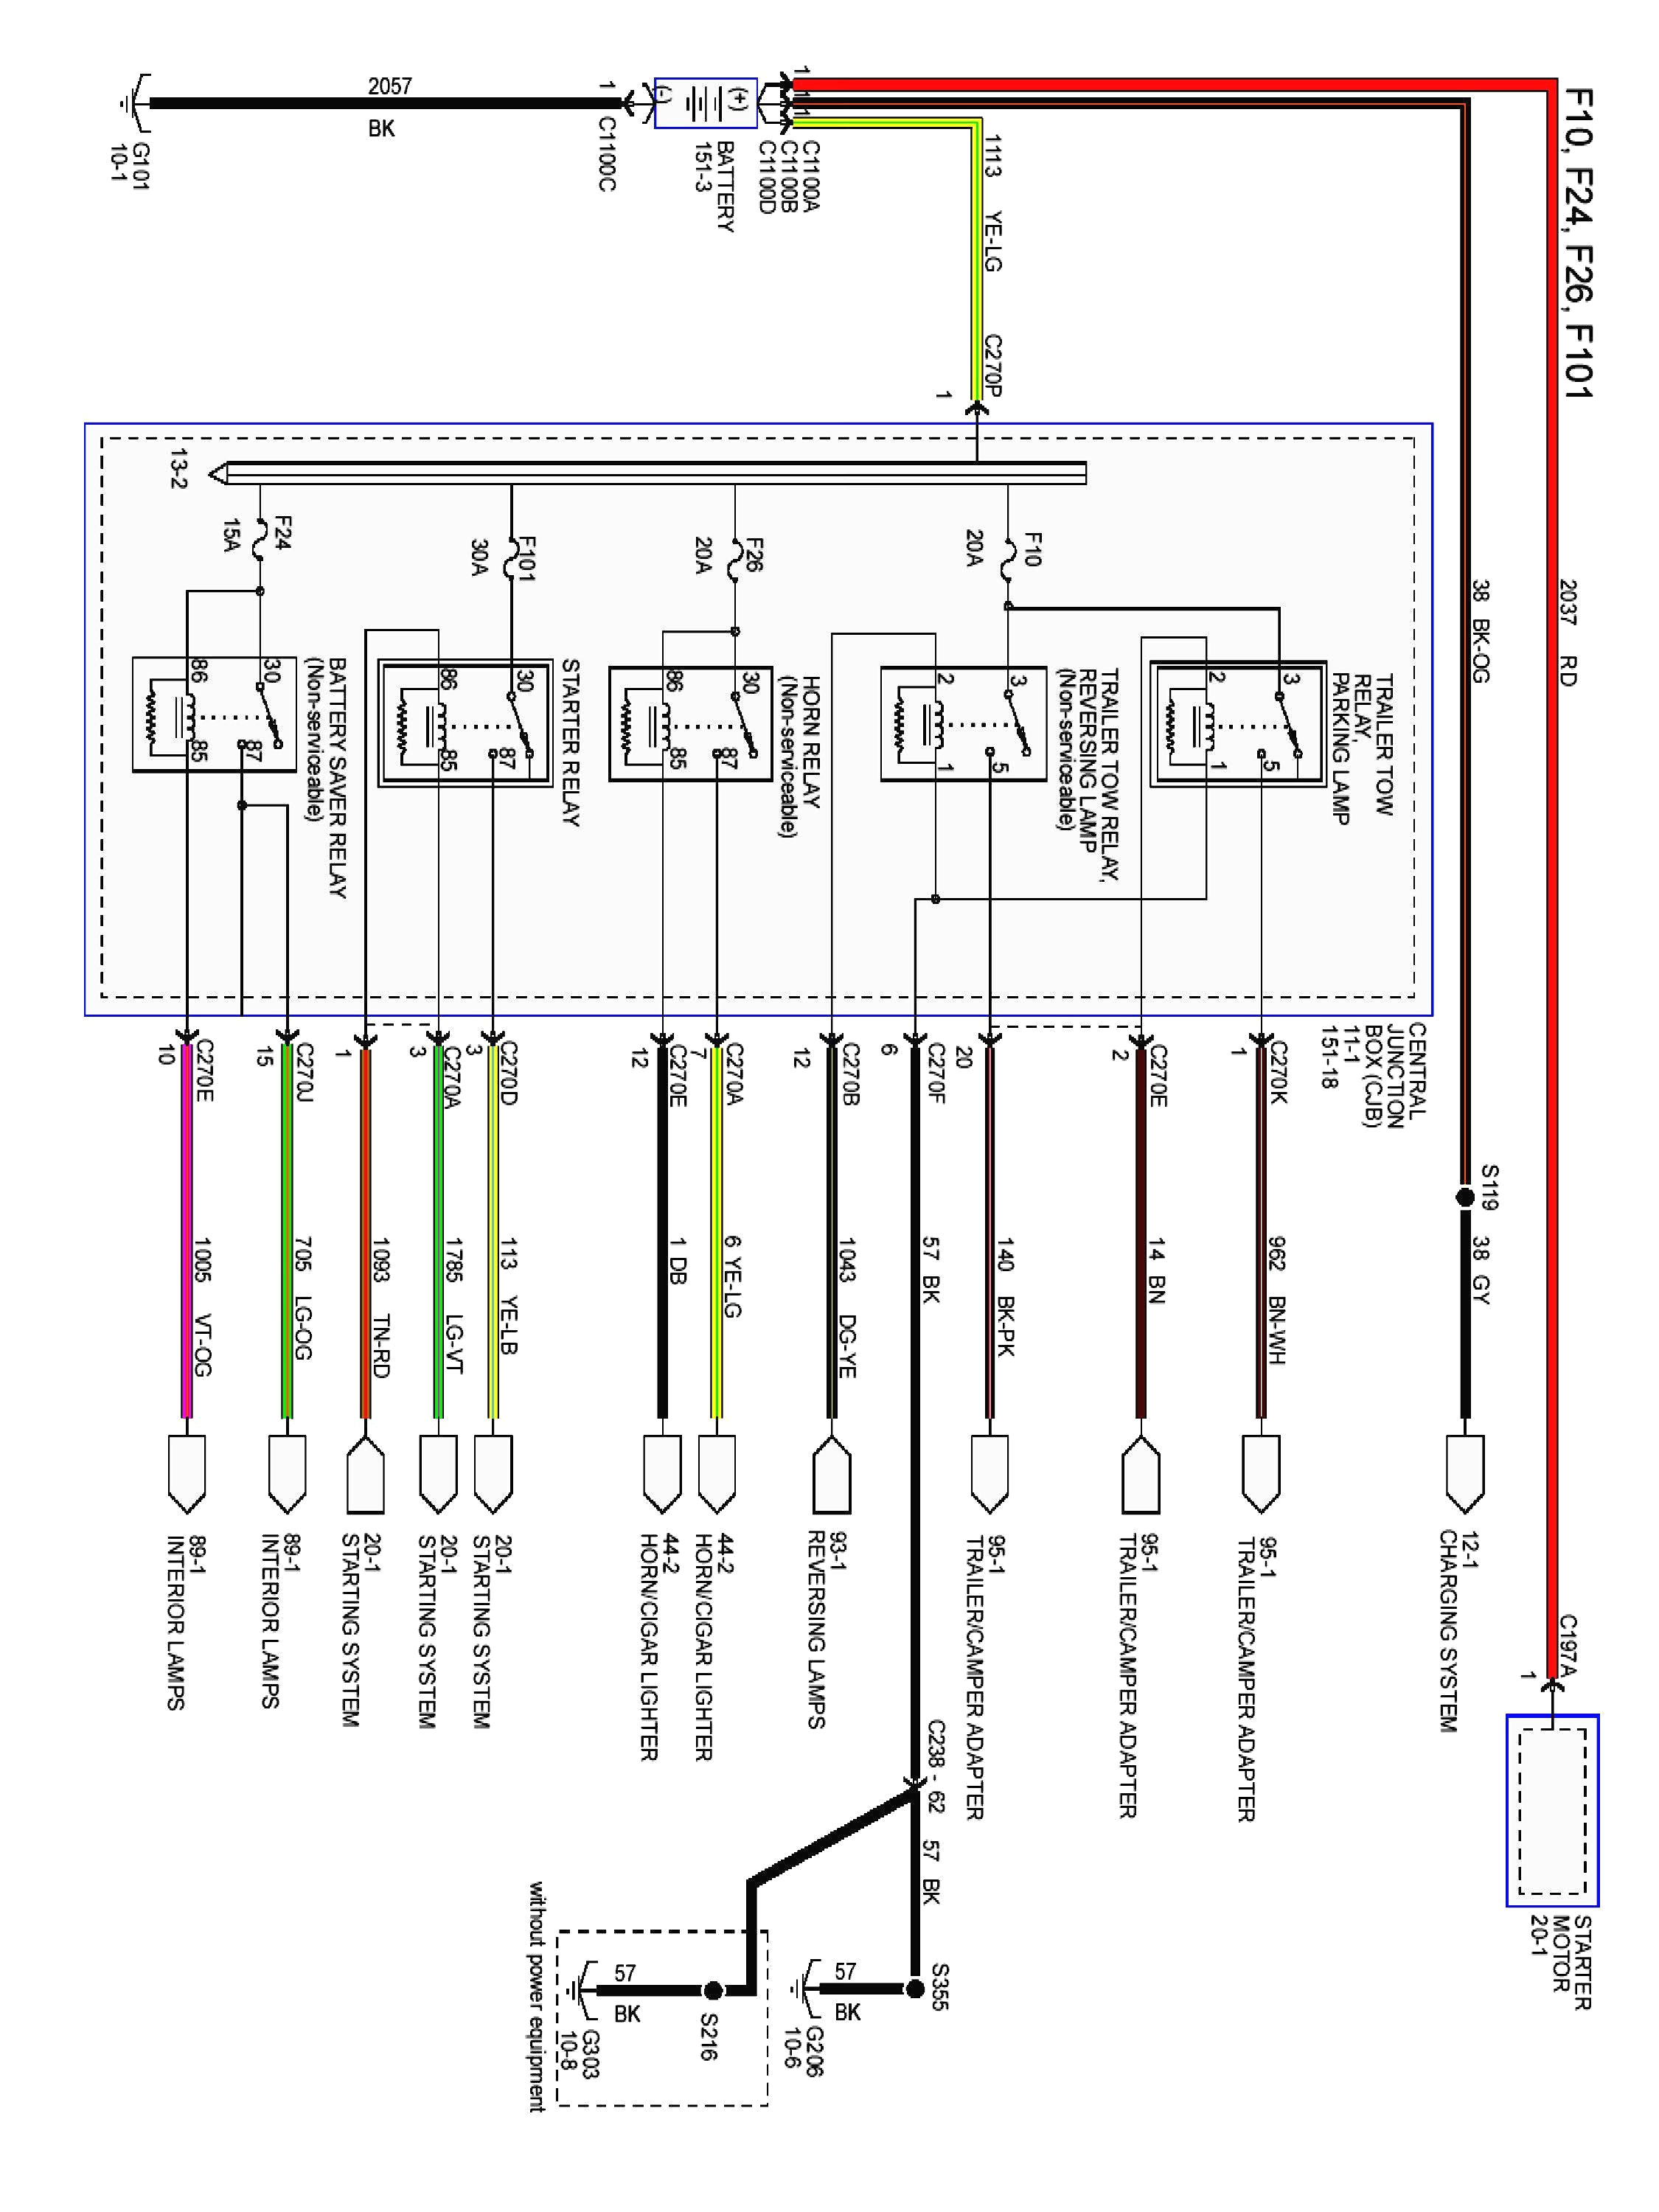 1999 zx2 fuse diagram wiring diagram go1999 zx2 fuse diagram wiring diagram name 1999 zx2 fuse